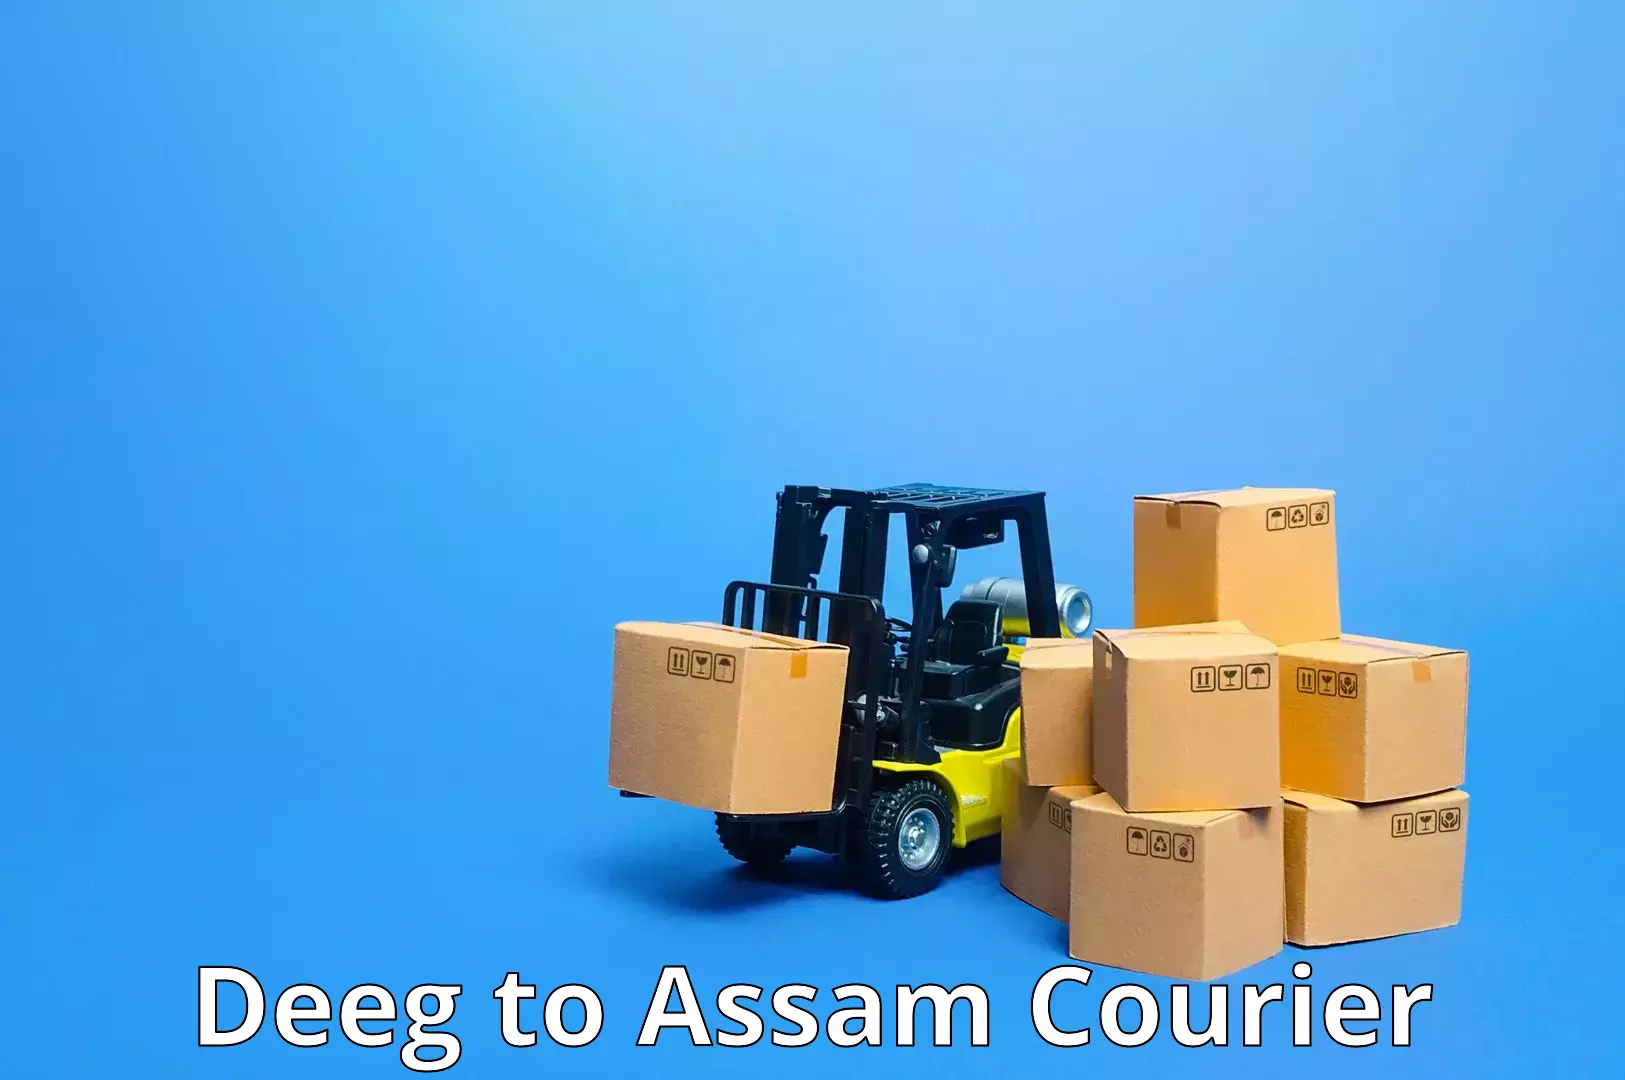 24-hour courier service Deeg to Assam